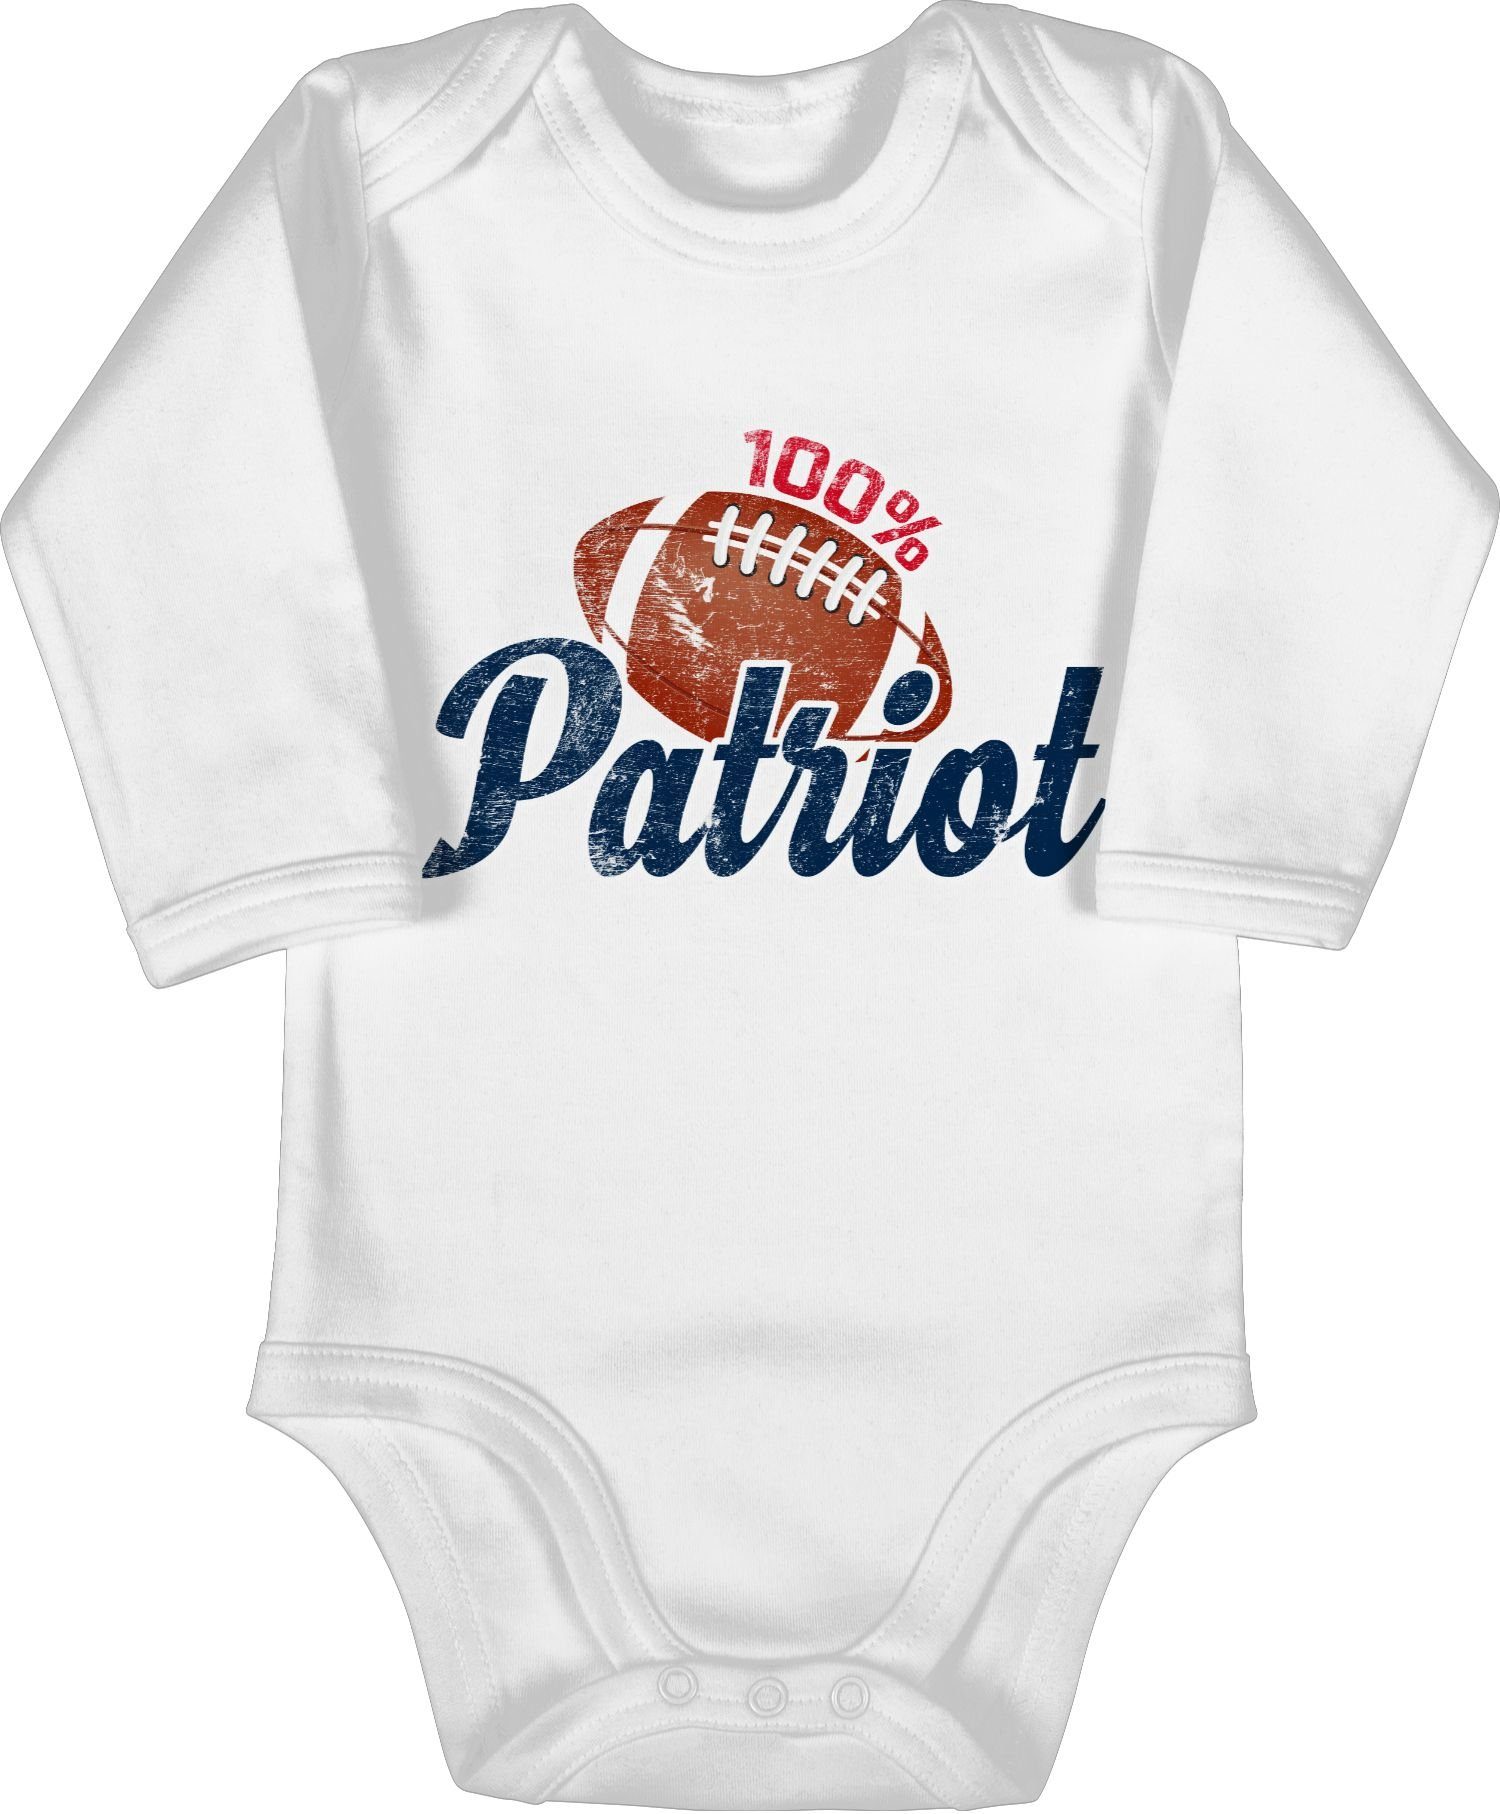 & Weiß Baby Shirtbody Patriot 100% Bewegung Shirtracer Sport 2